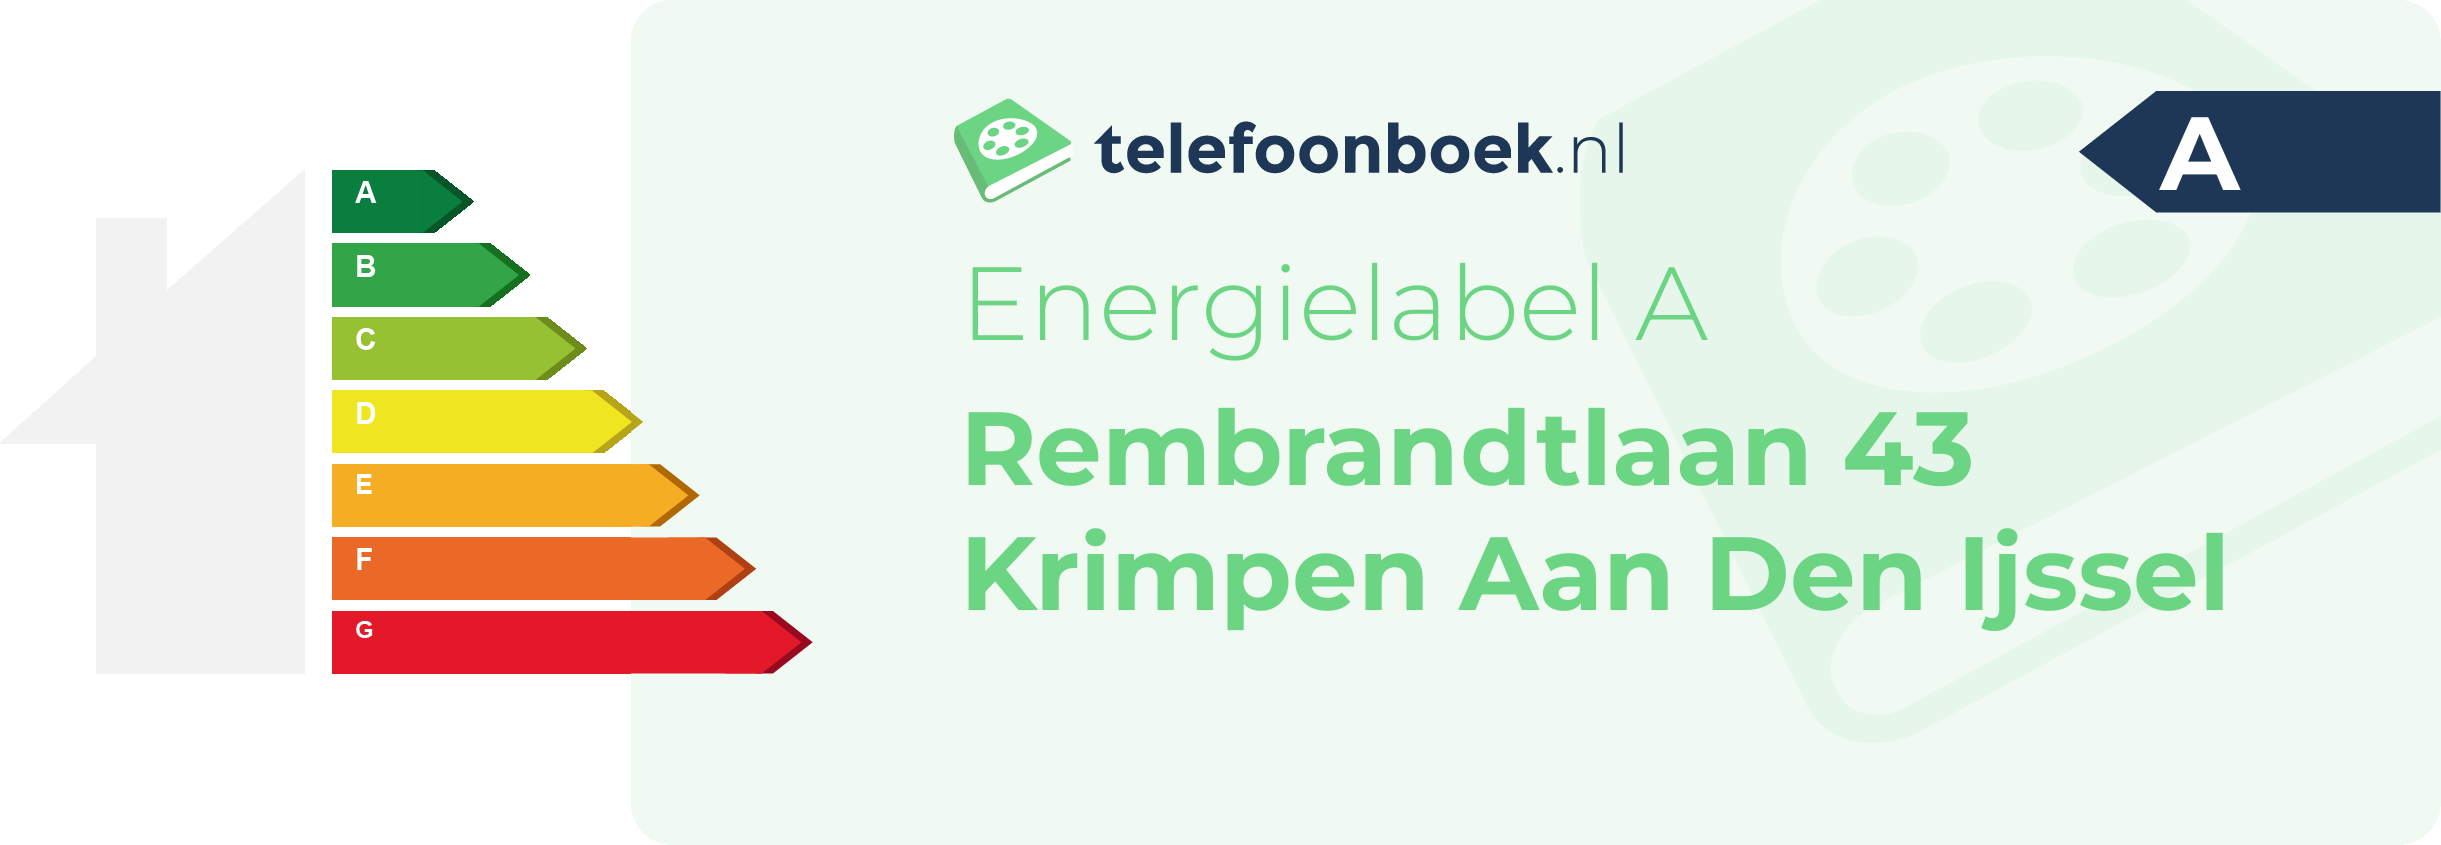 Energielabel Rembrandtlaan 43 Krimpen Aan Den Ijssel